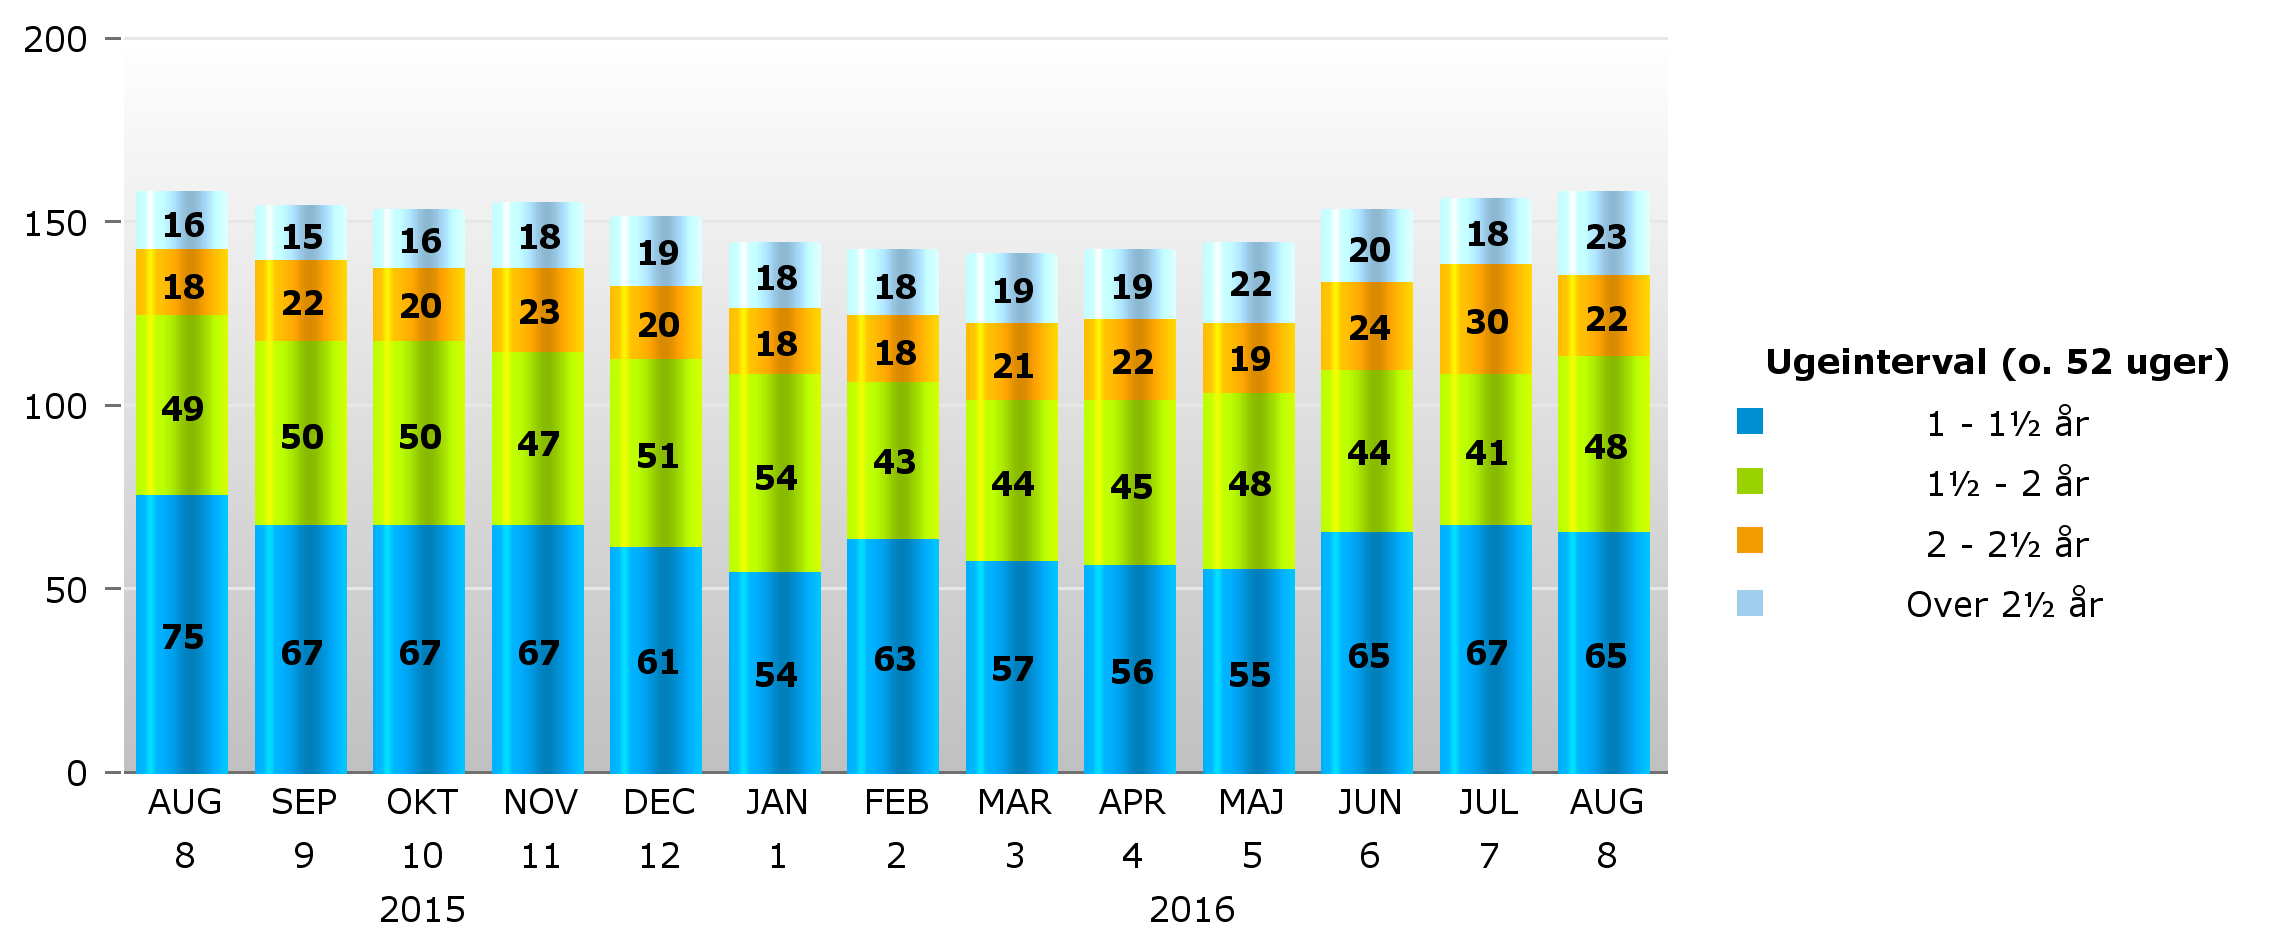 Sygedagpenge Antal sygedagpengesager fordelt på varighed fra august 2015 til august 2016 2015 2016 Var.